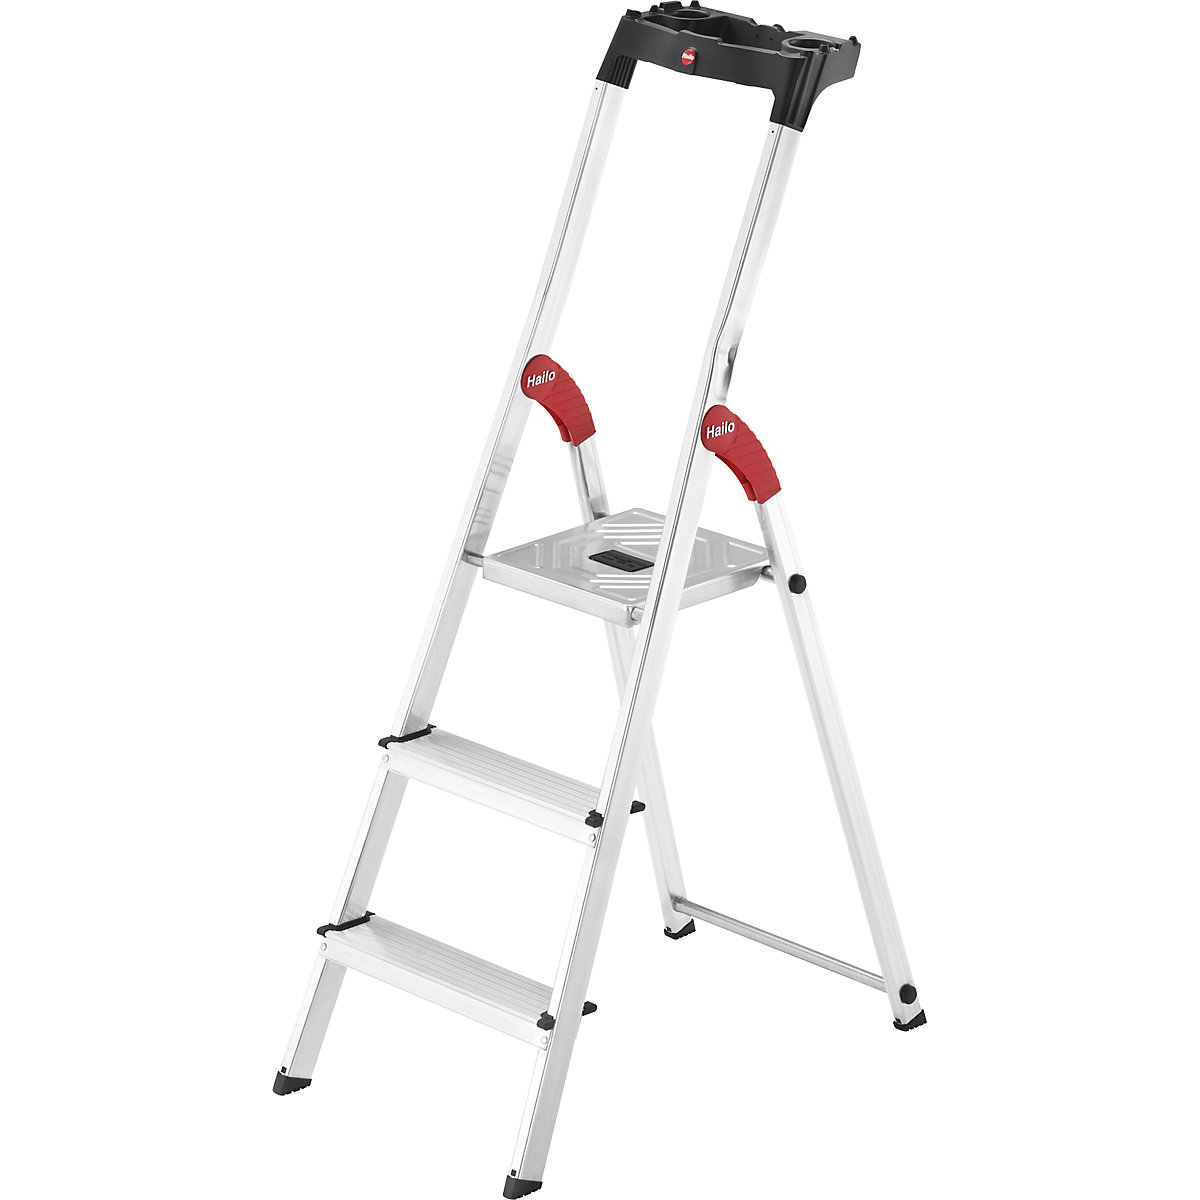 Hliníkový stojací rebrík so stupňami StandardLine L60 – Hailo